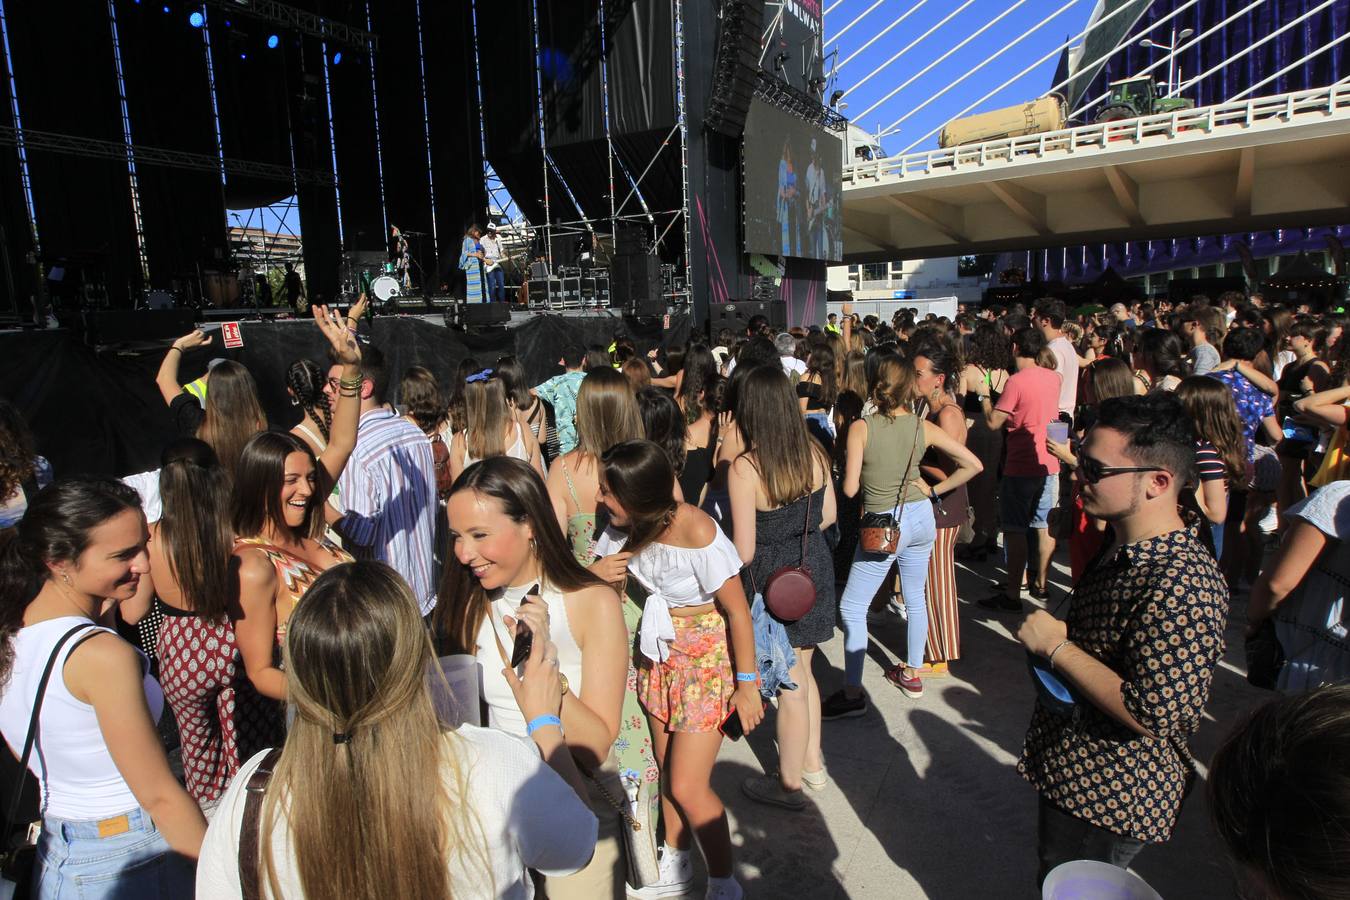 La Ciudad de las Artes y las Ciencias de Valencia acoge este 7 y 8 de junio a miles de fans de la música y a cientos de artistas para dar la bienvenida al verano